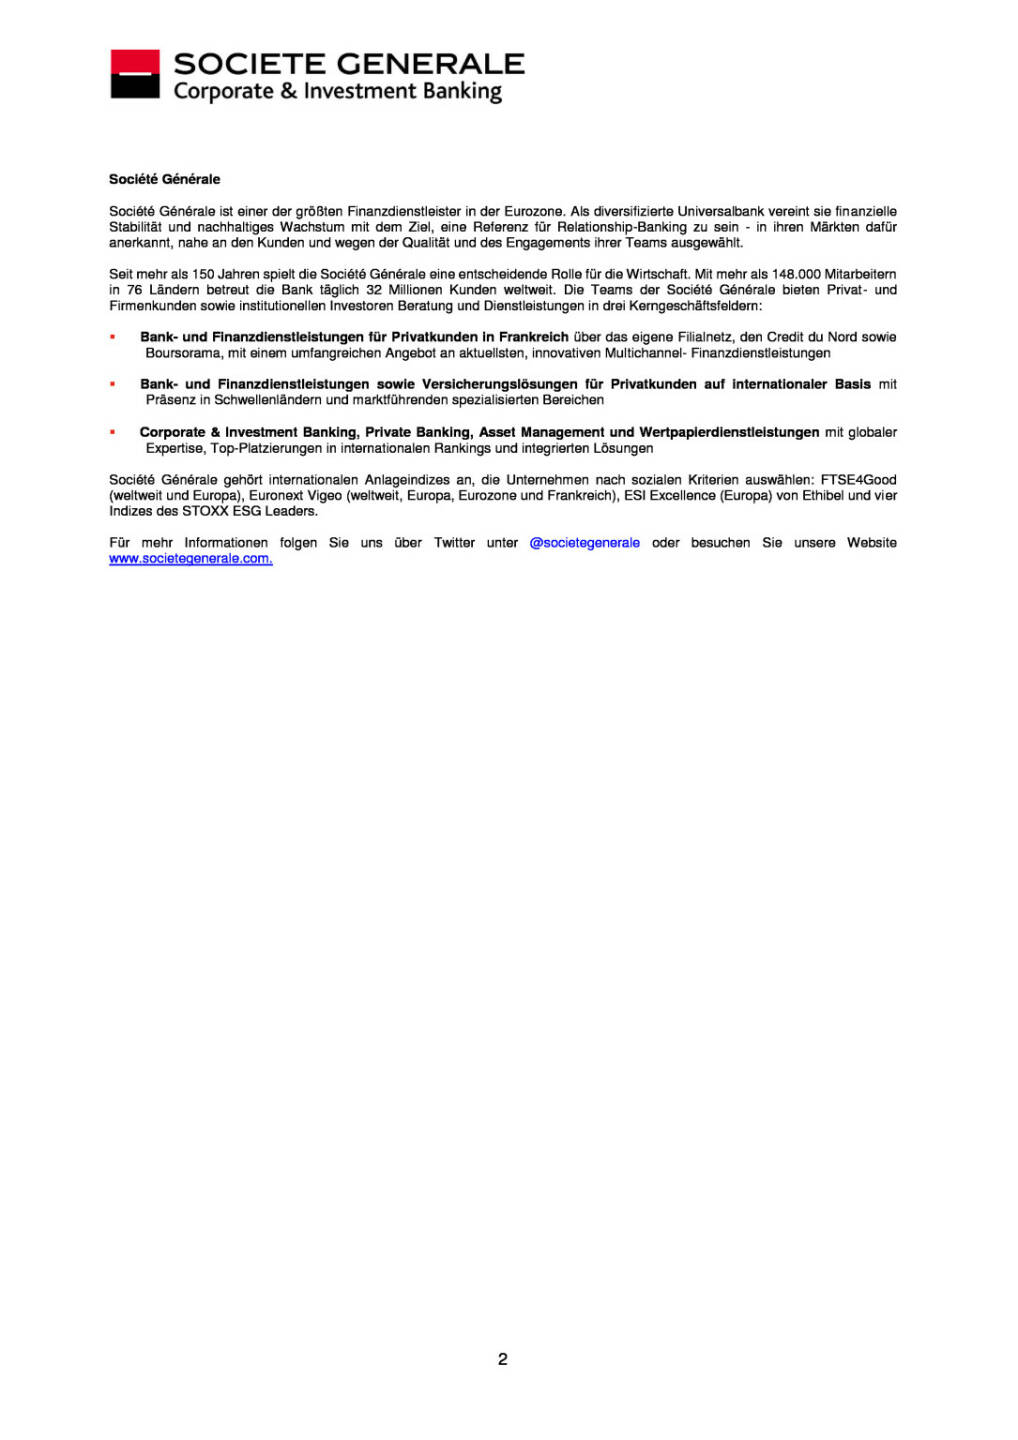 Societe Generale Corporate & Investment Banking ernennt neuen COO für Österreich, Seite 2/2, komplettes Dokument unter http://boerse-social.com/static/uploads/file_138__societe_generale_osterreich.pdf